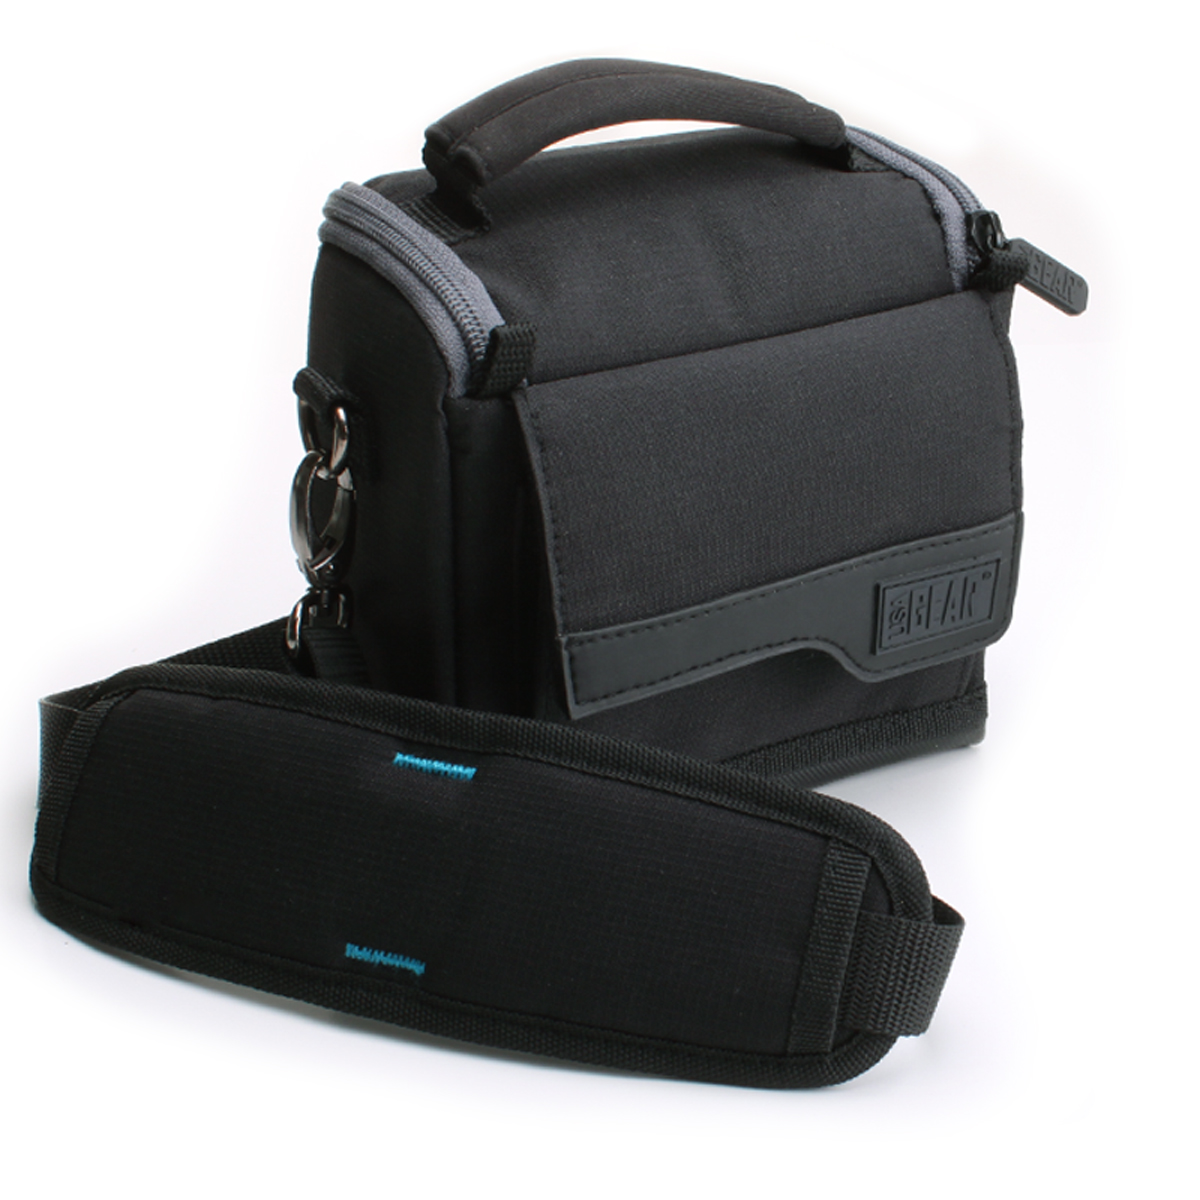 USA GEAR Camera Case Bag For Fujifilm Instax Mini 7s, Mini 25 / 50s